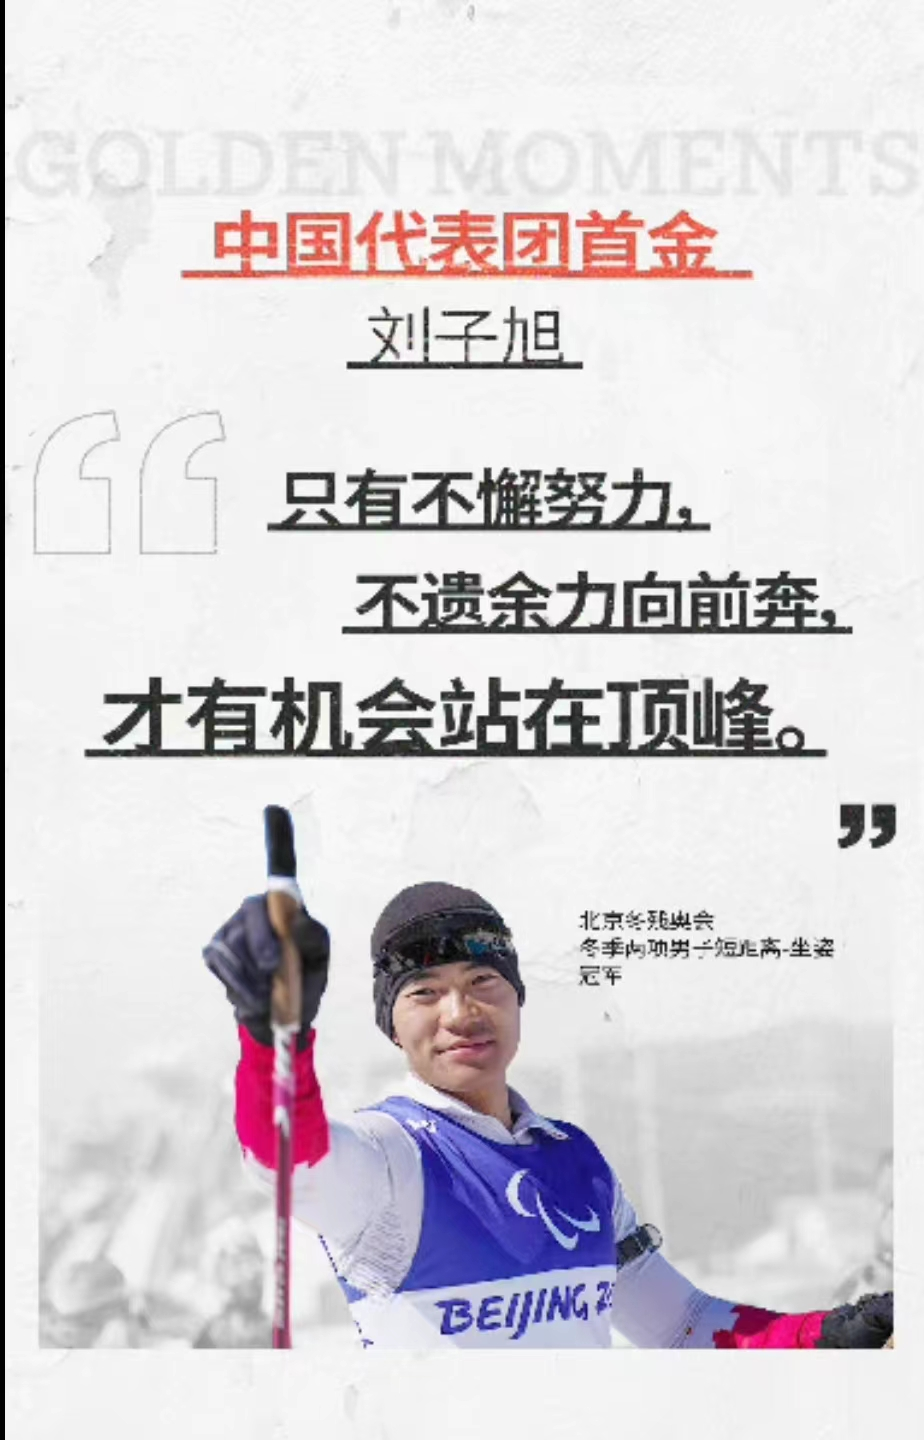 在北京2022年冬残奥会上中国队获得几枚金牌？